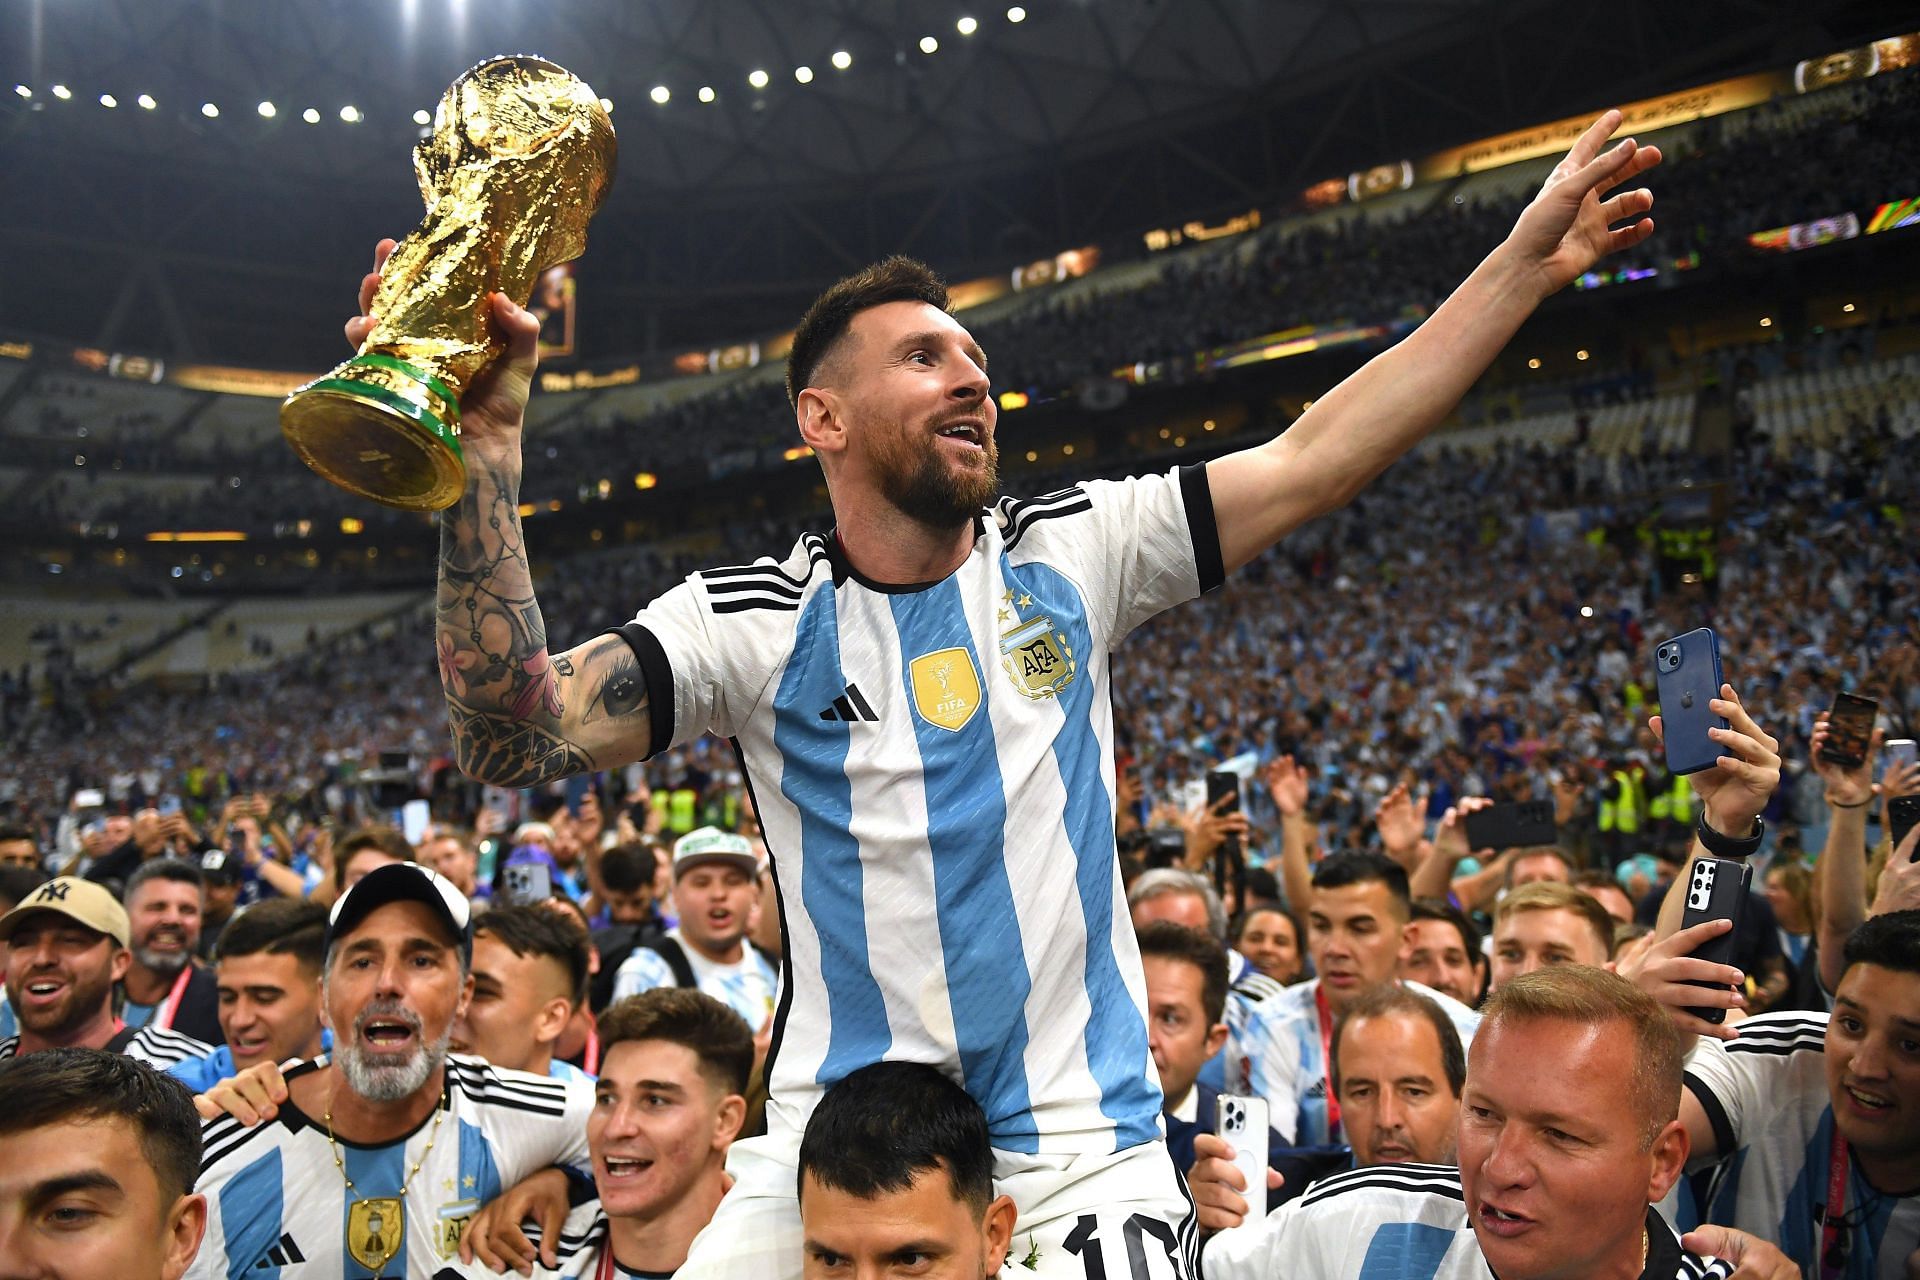 फुटबॉल विश्व कप ट्रॉफी को थामे अर्जेंटीना के स्टार खिलाड़ी लायोनल मेसी।